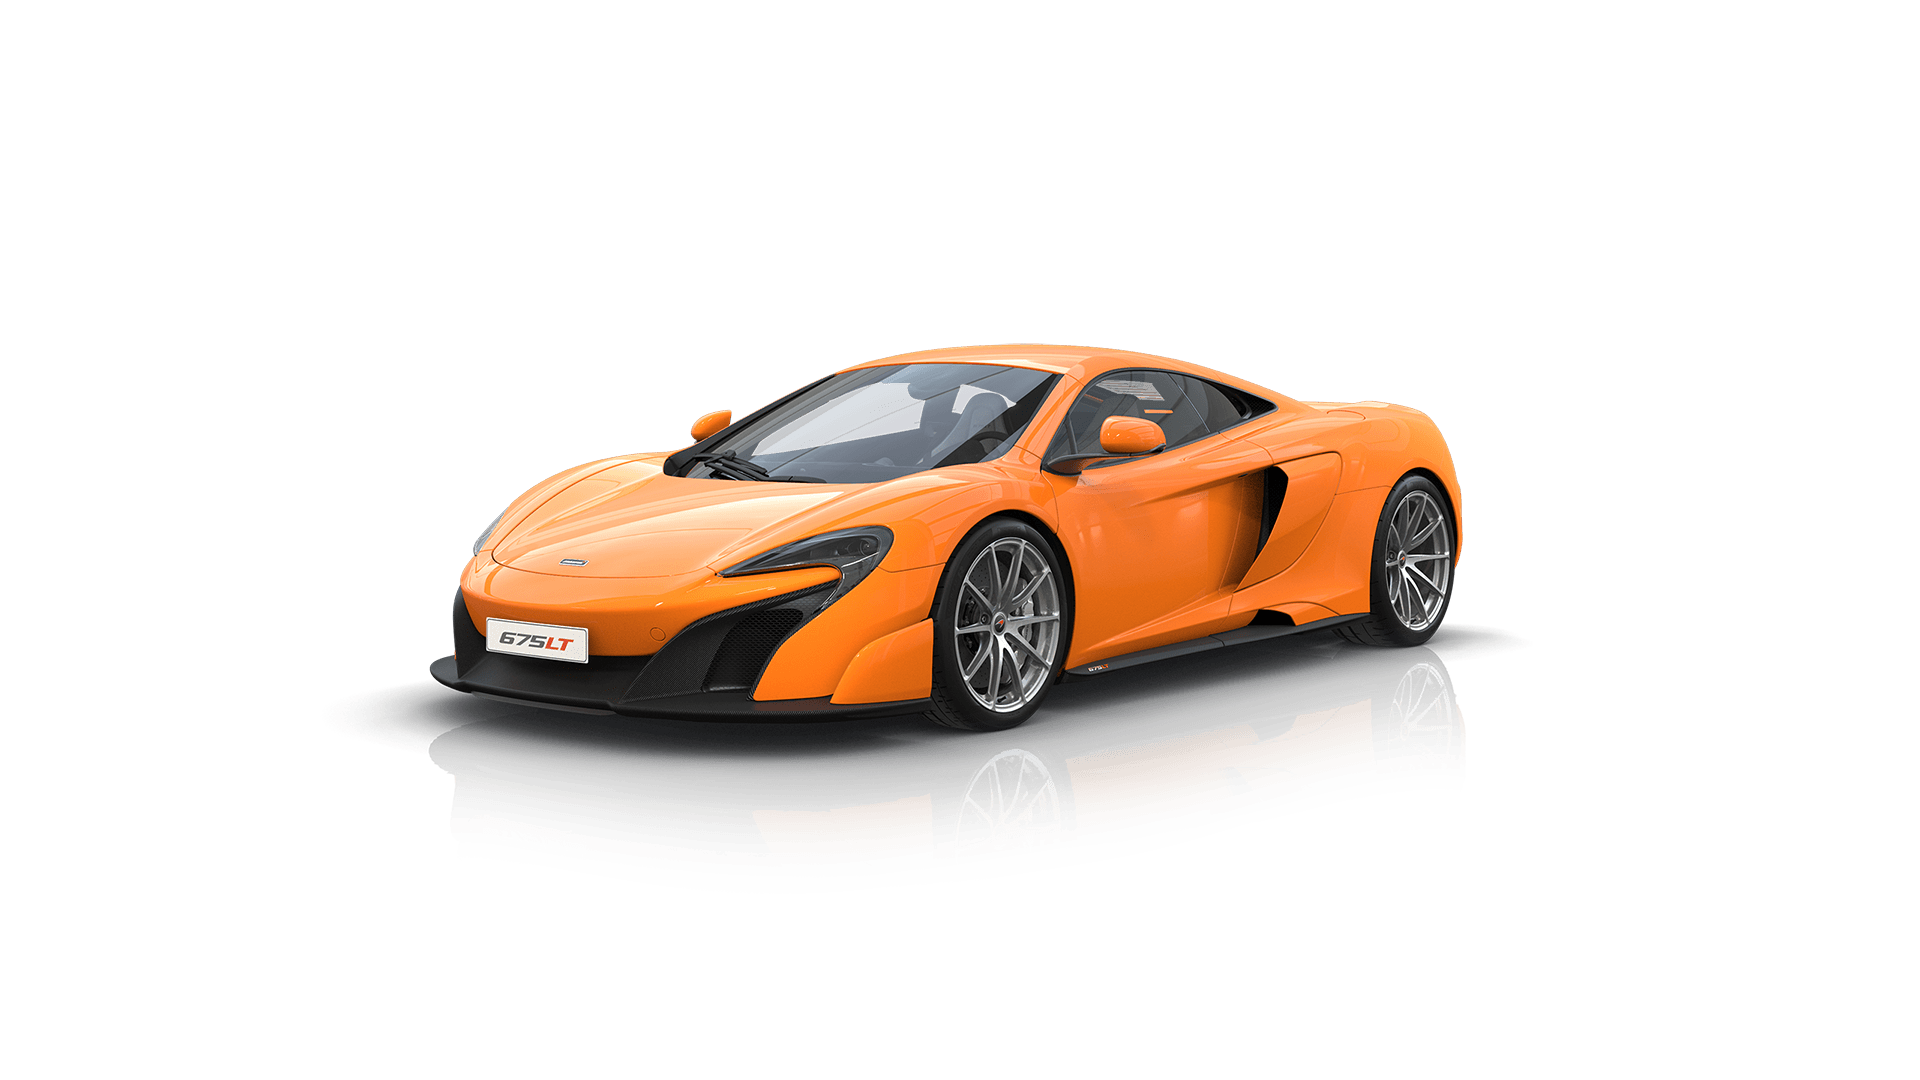 McLaren HD wallpapers, Desktop wallpaper - most viewed